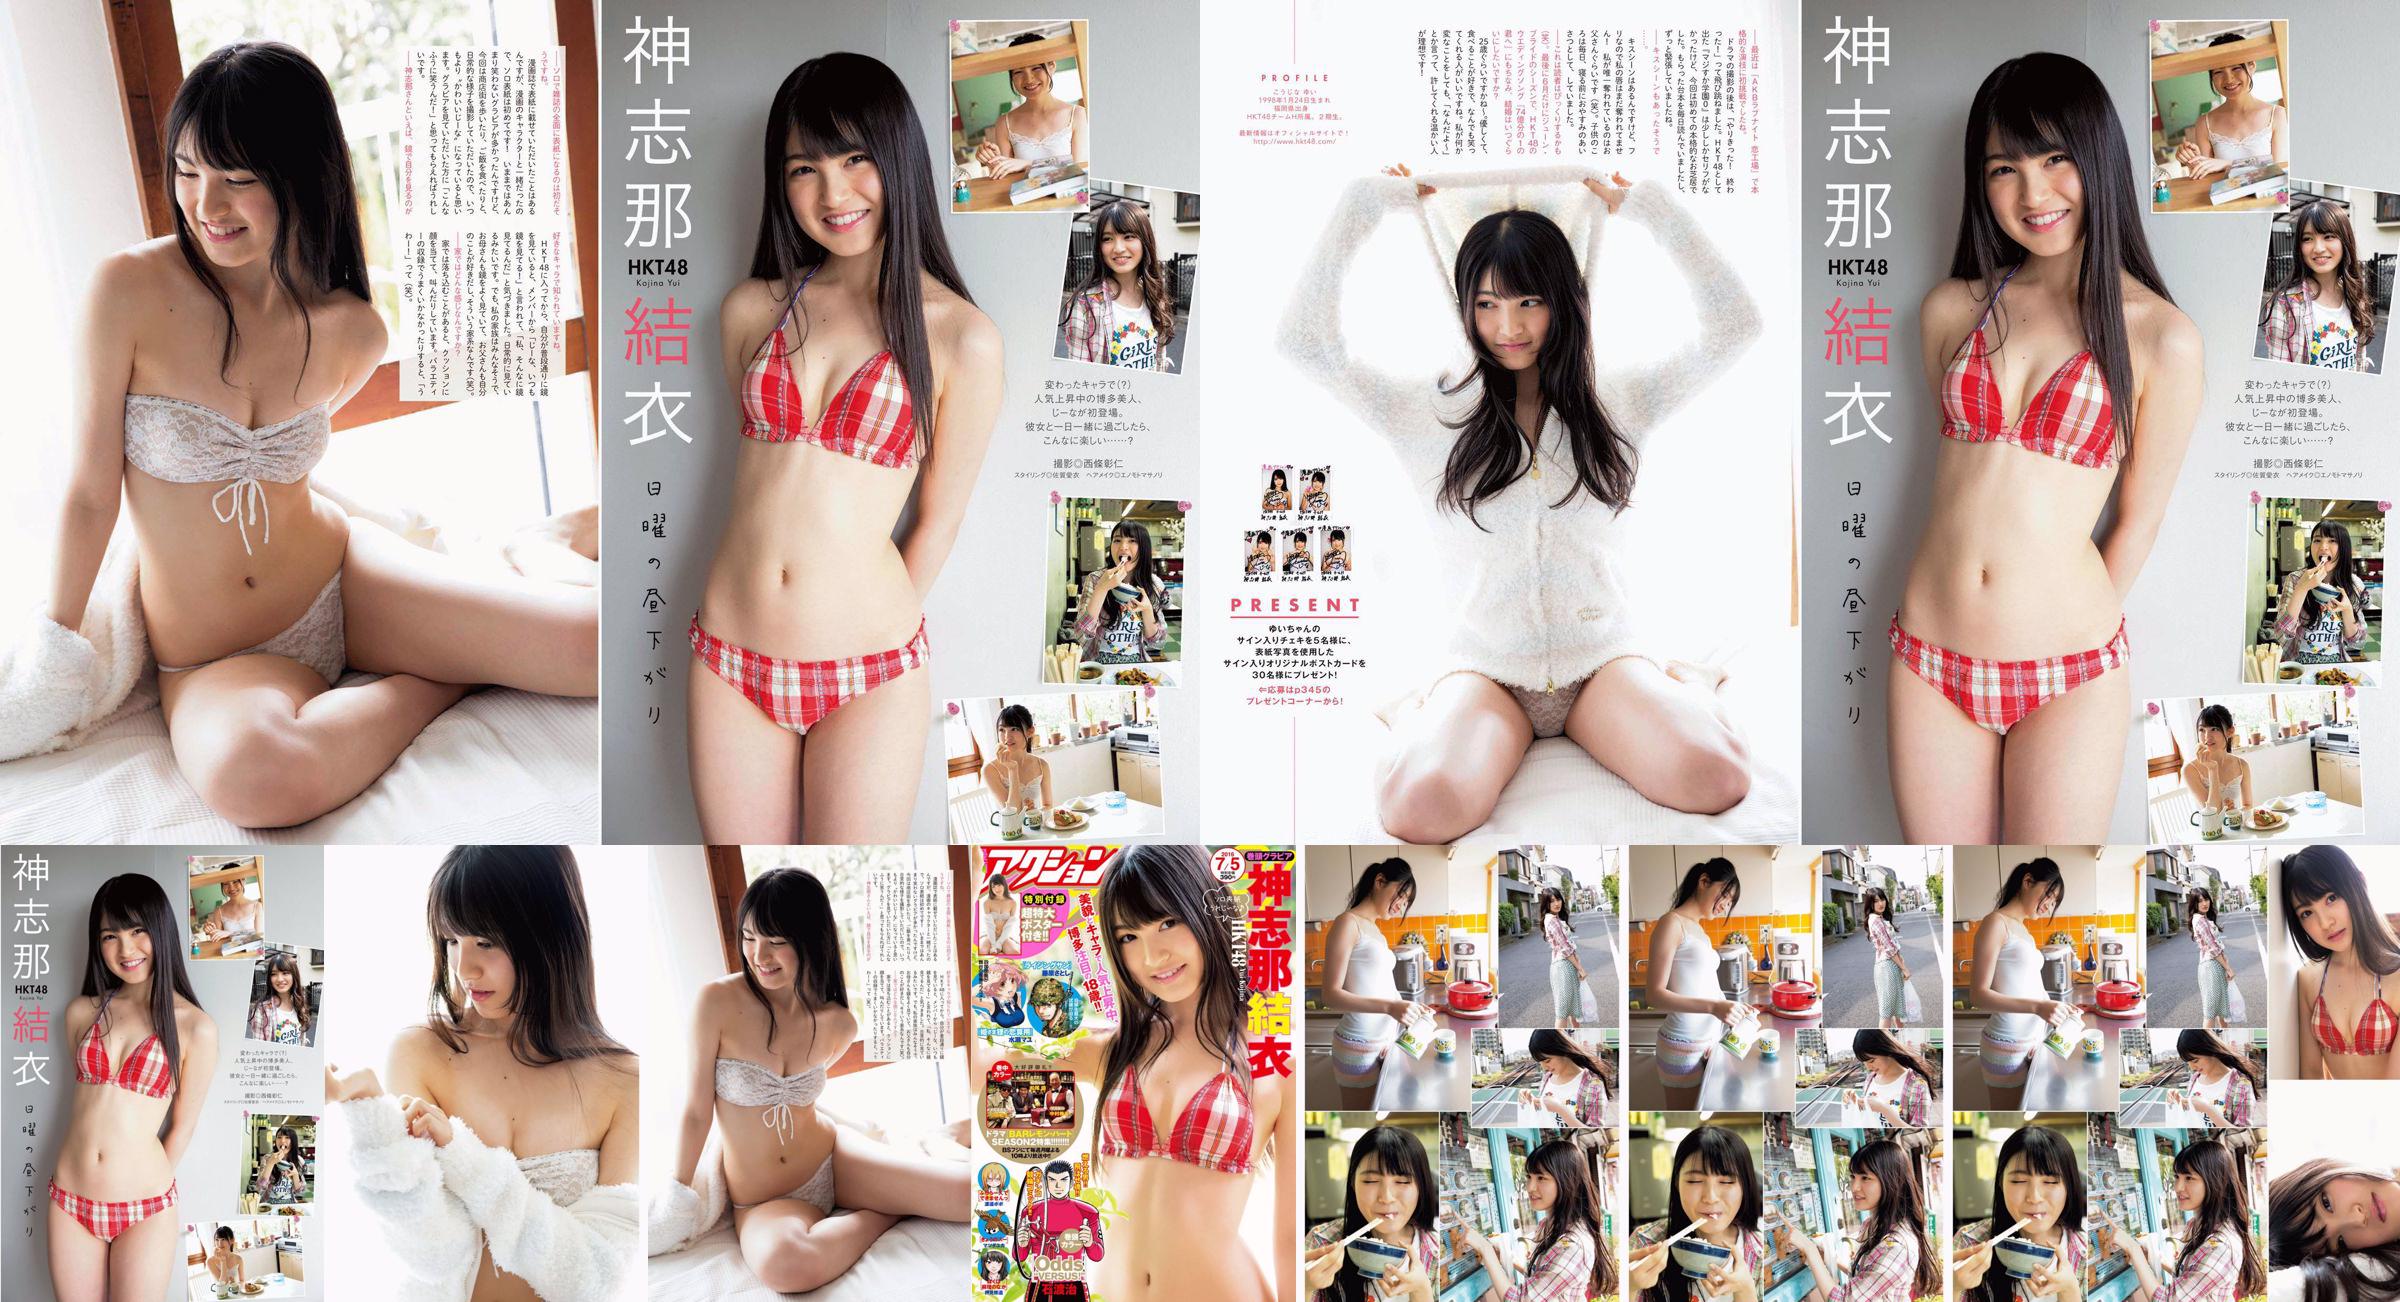 [Acción Manga] Shinshina Yui 2016 No.13 Photo Magazine No.bd31a1 Página 1